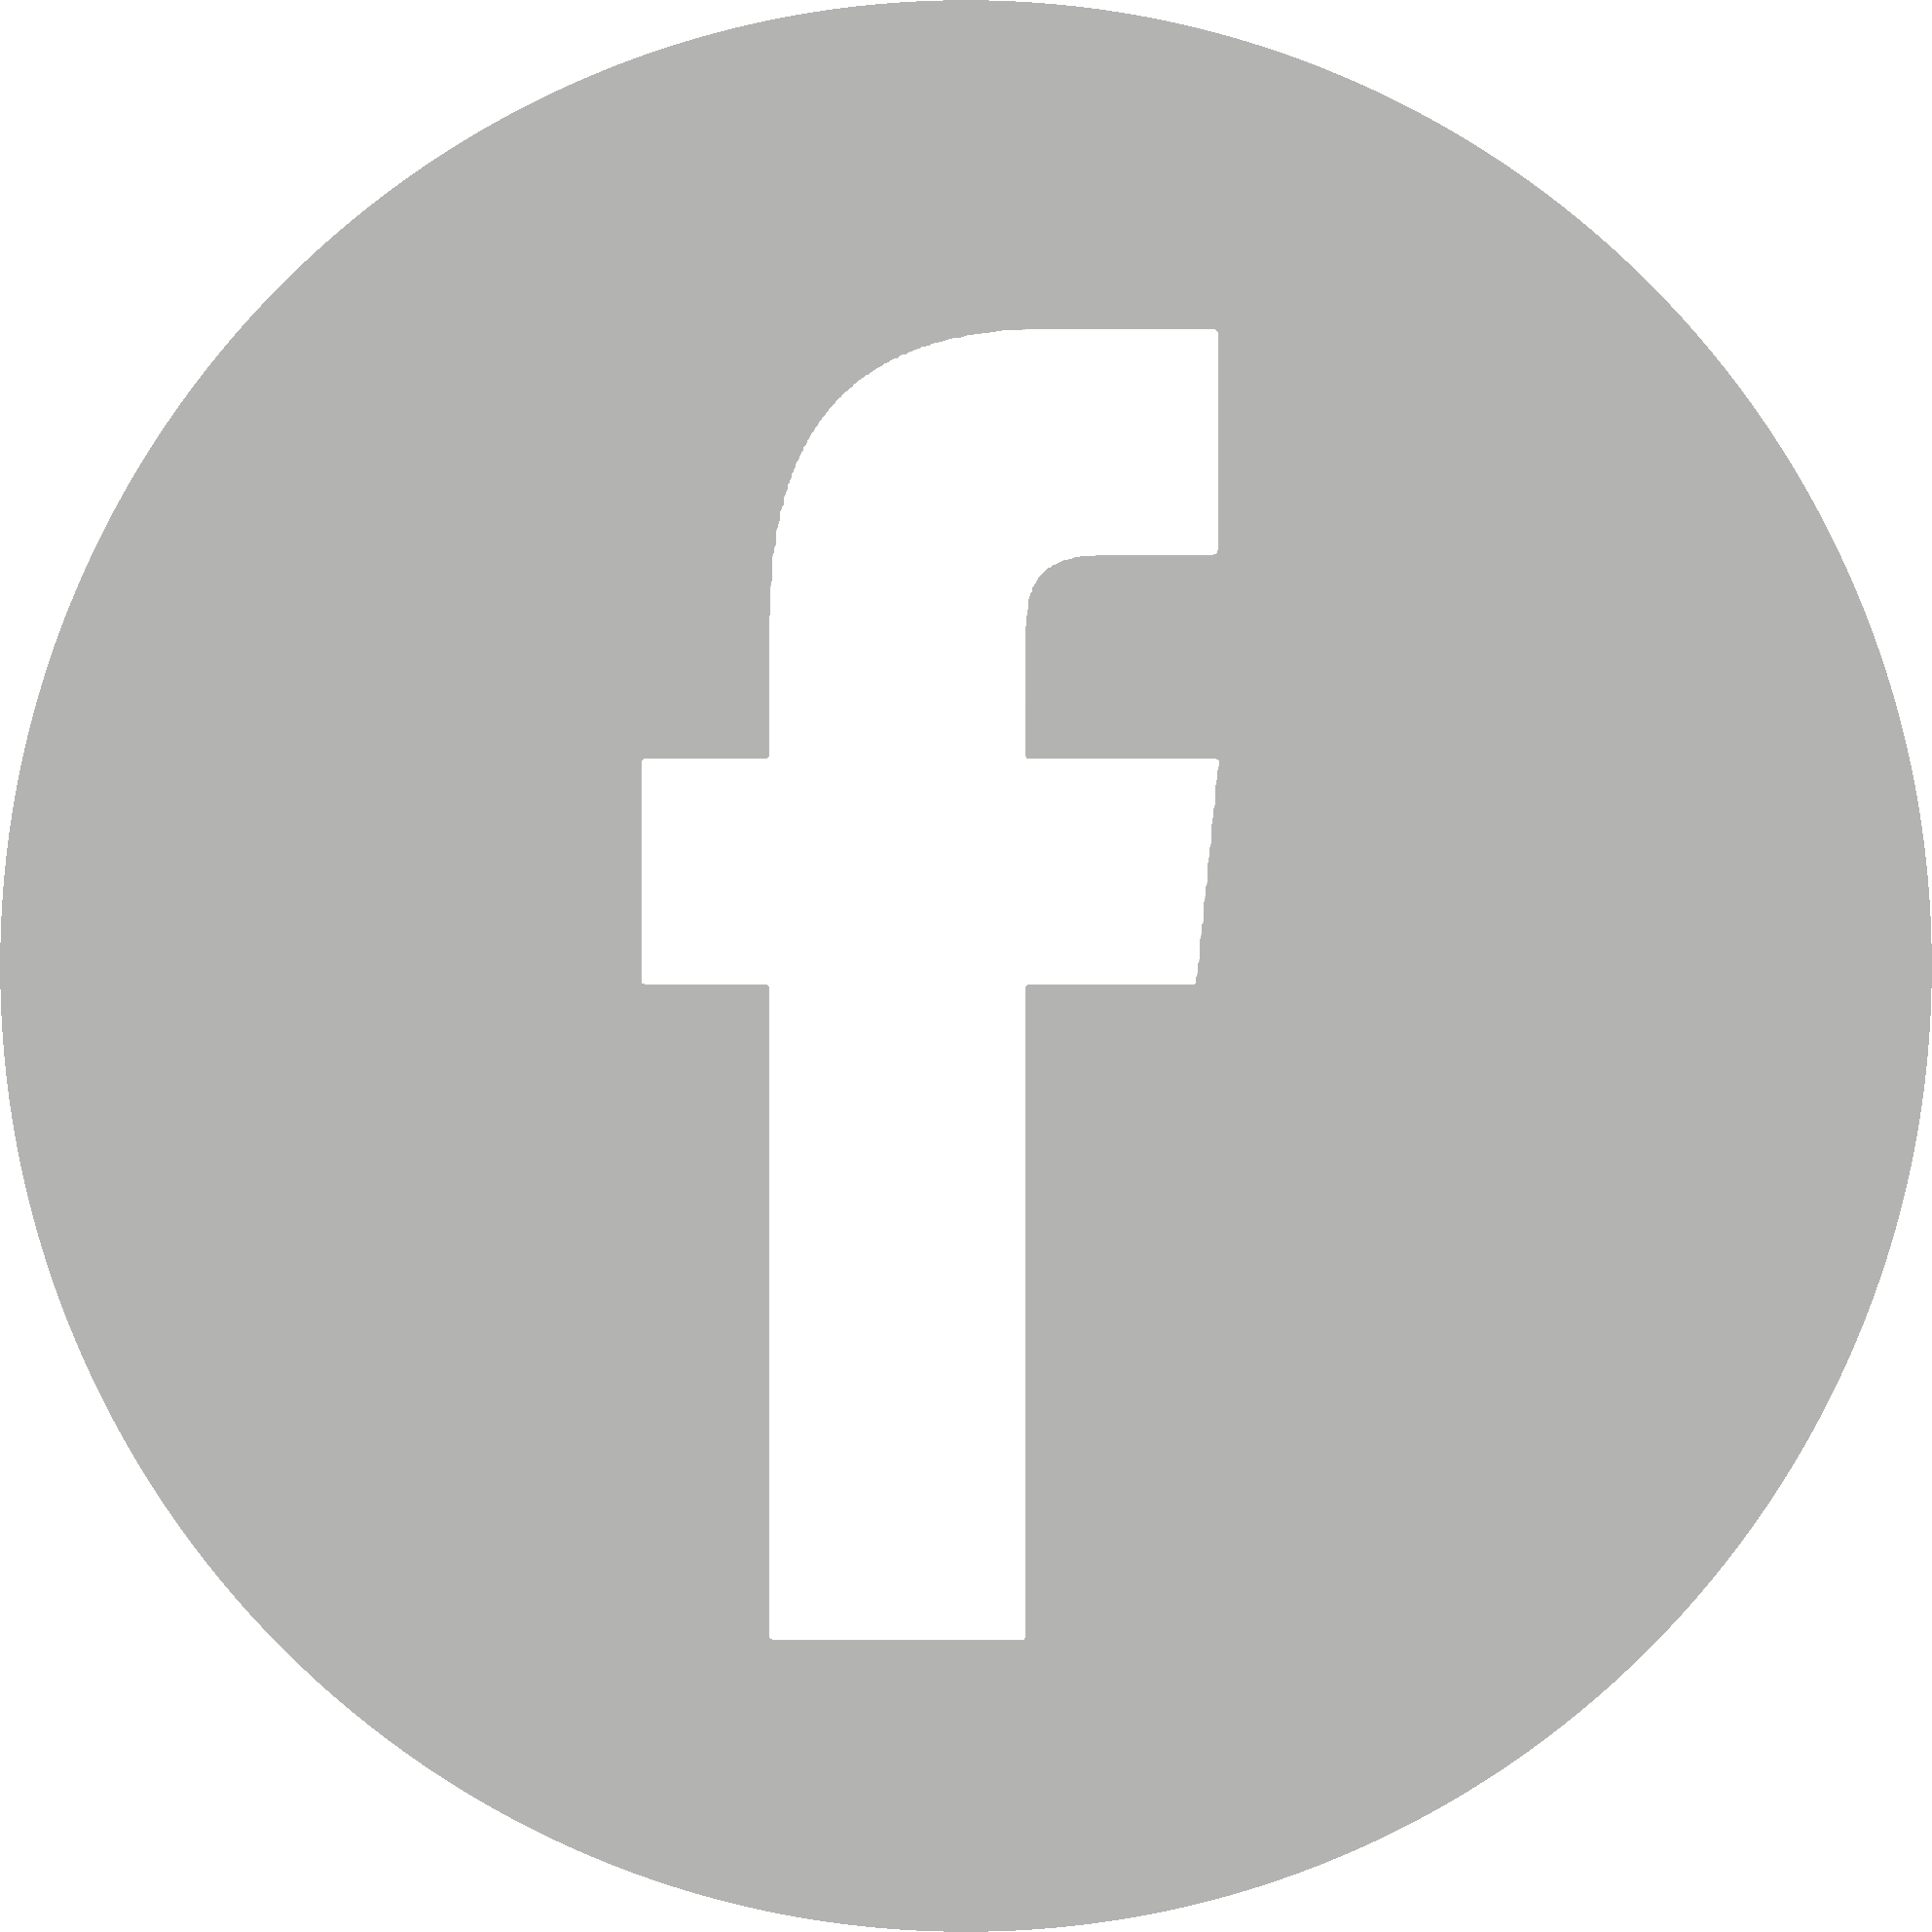 ไอคอน FB โลโก้ Facebook วงกลมสีเทา PNG